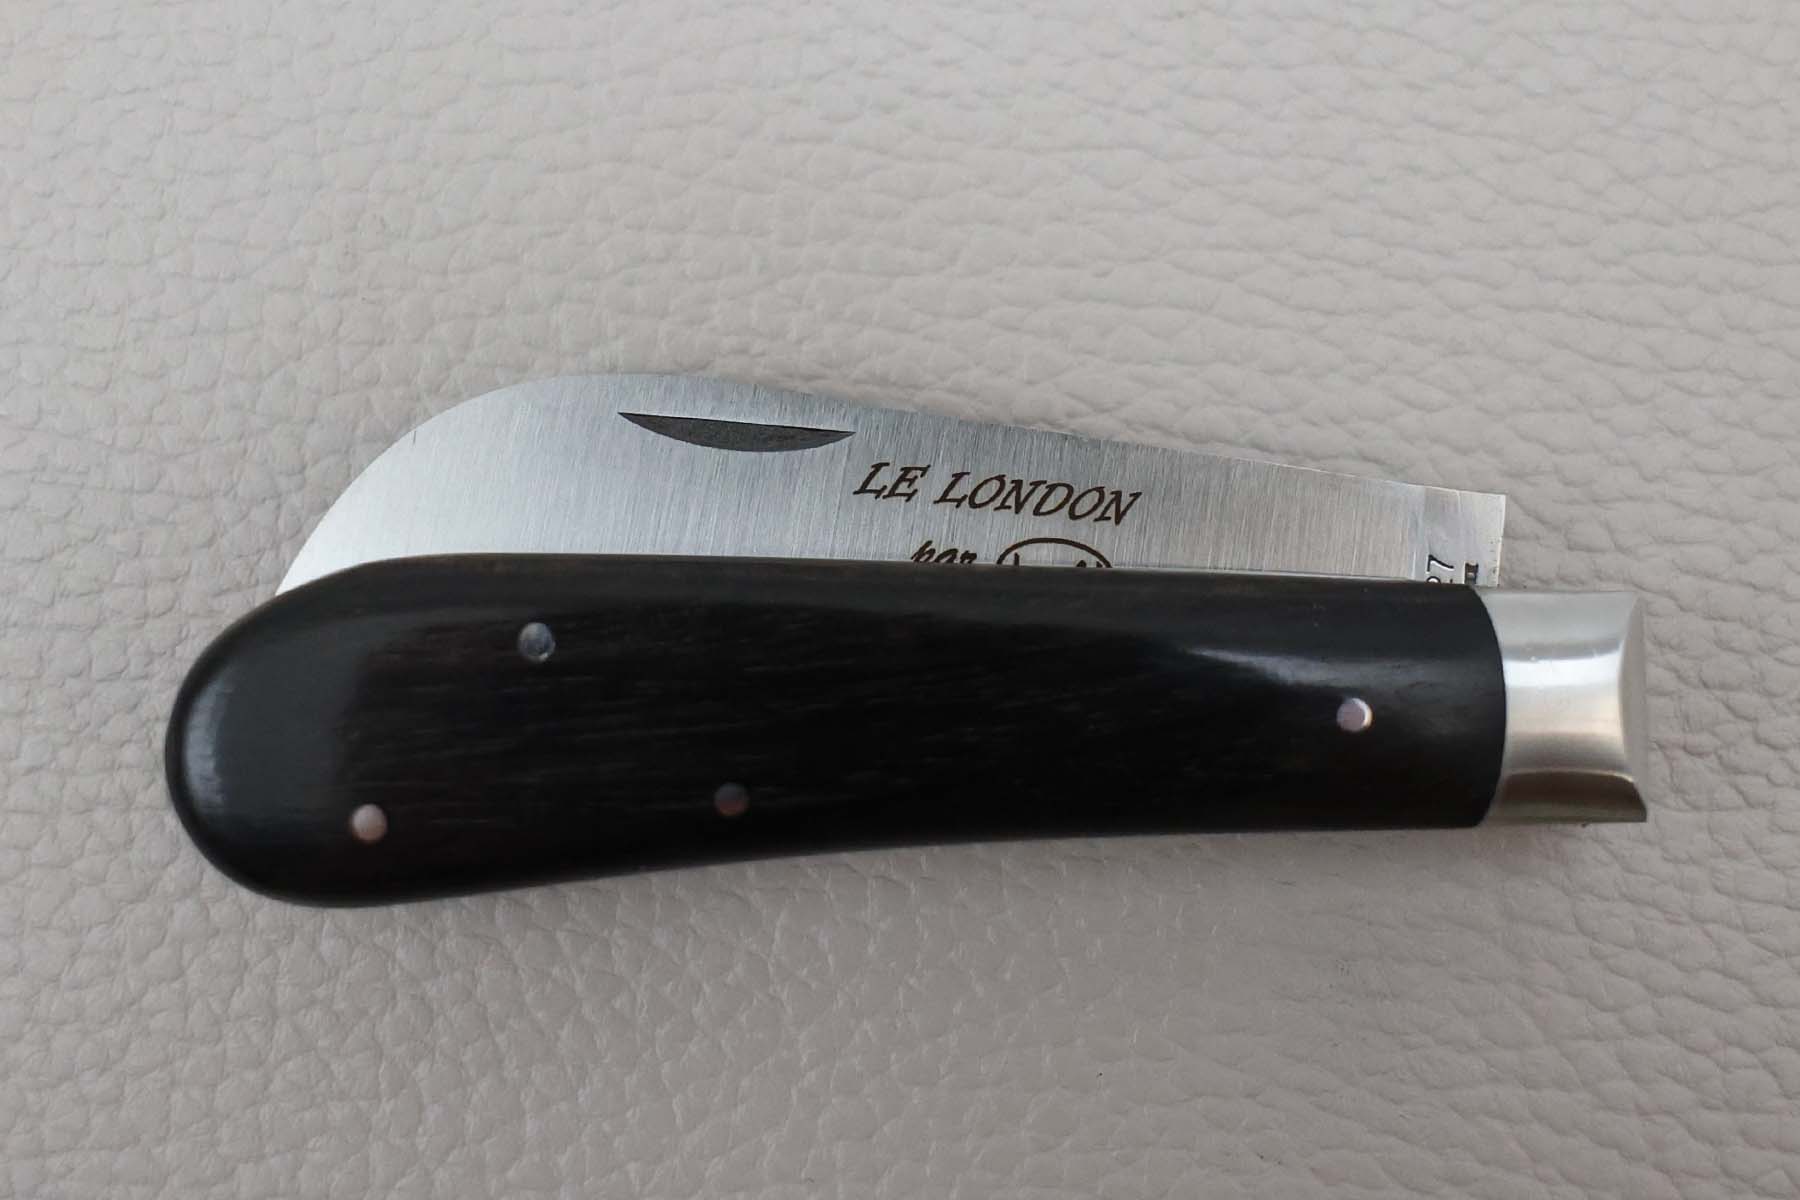 Couteau pliant modèle "Le London" par Locau - ébène